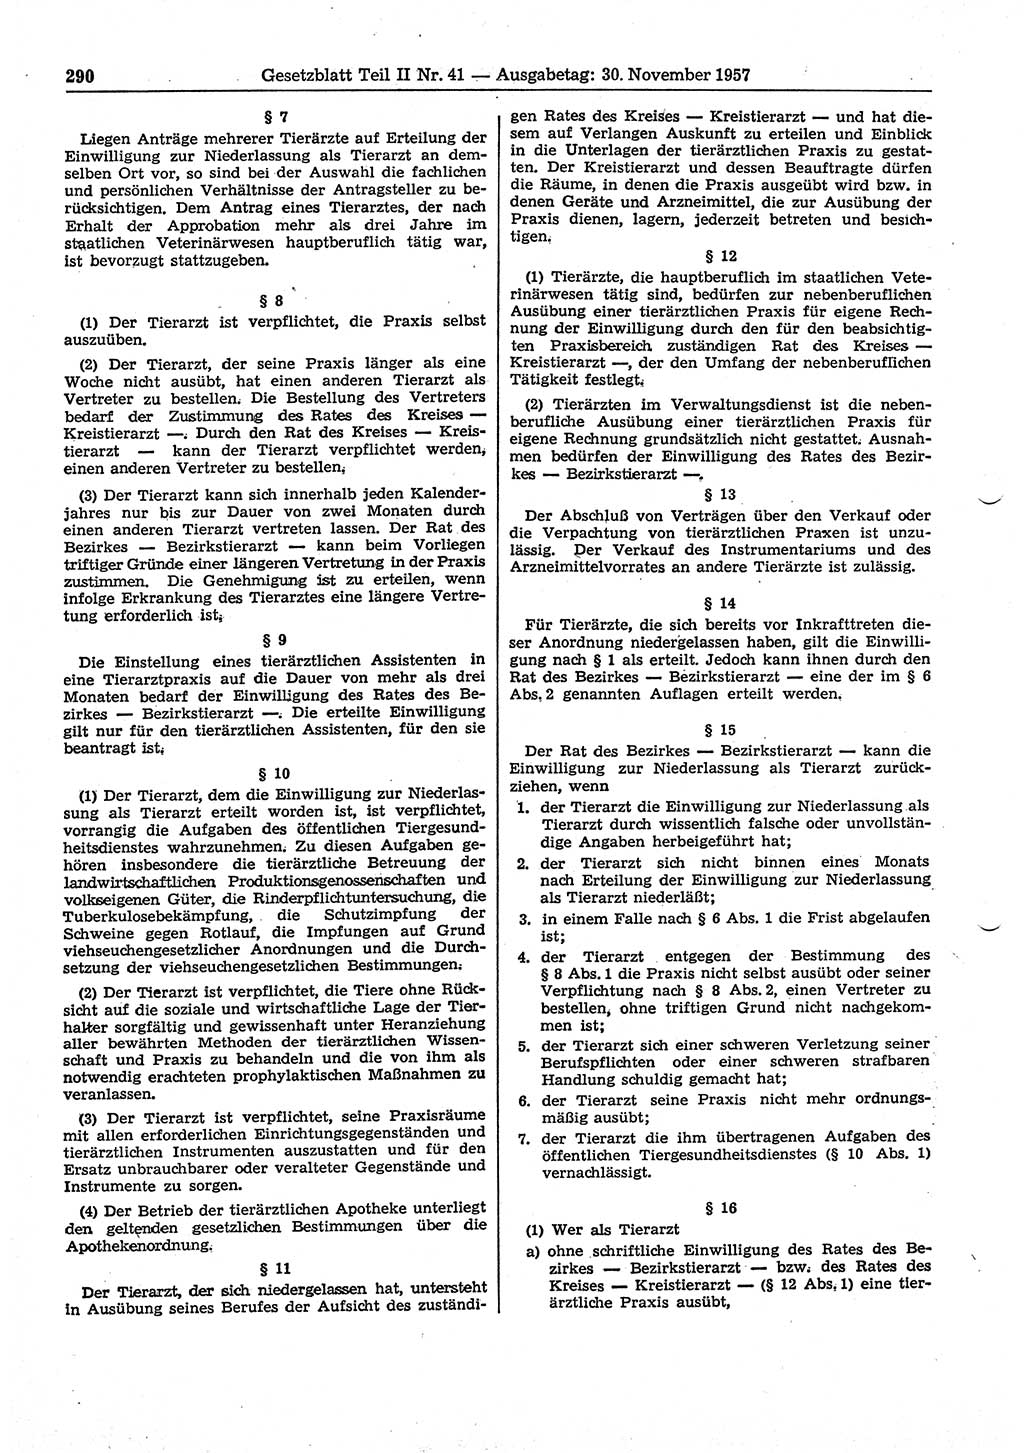 Gesetzblatt (GBl.) der Deutschen Demokratischen Republik (DDR) Teil ⅠⅠ 1957, Seite 290 (GBl. DDR ⅠⅠ 1957, S. 290)